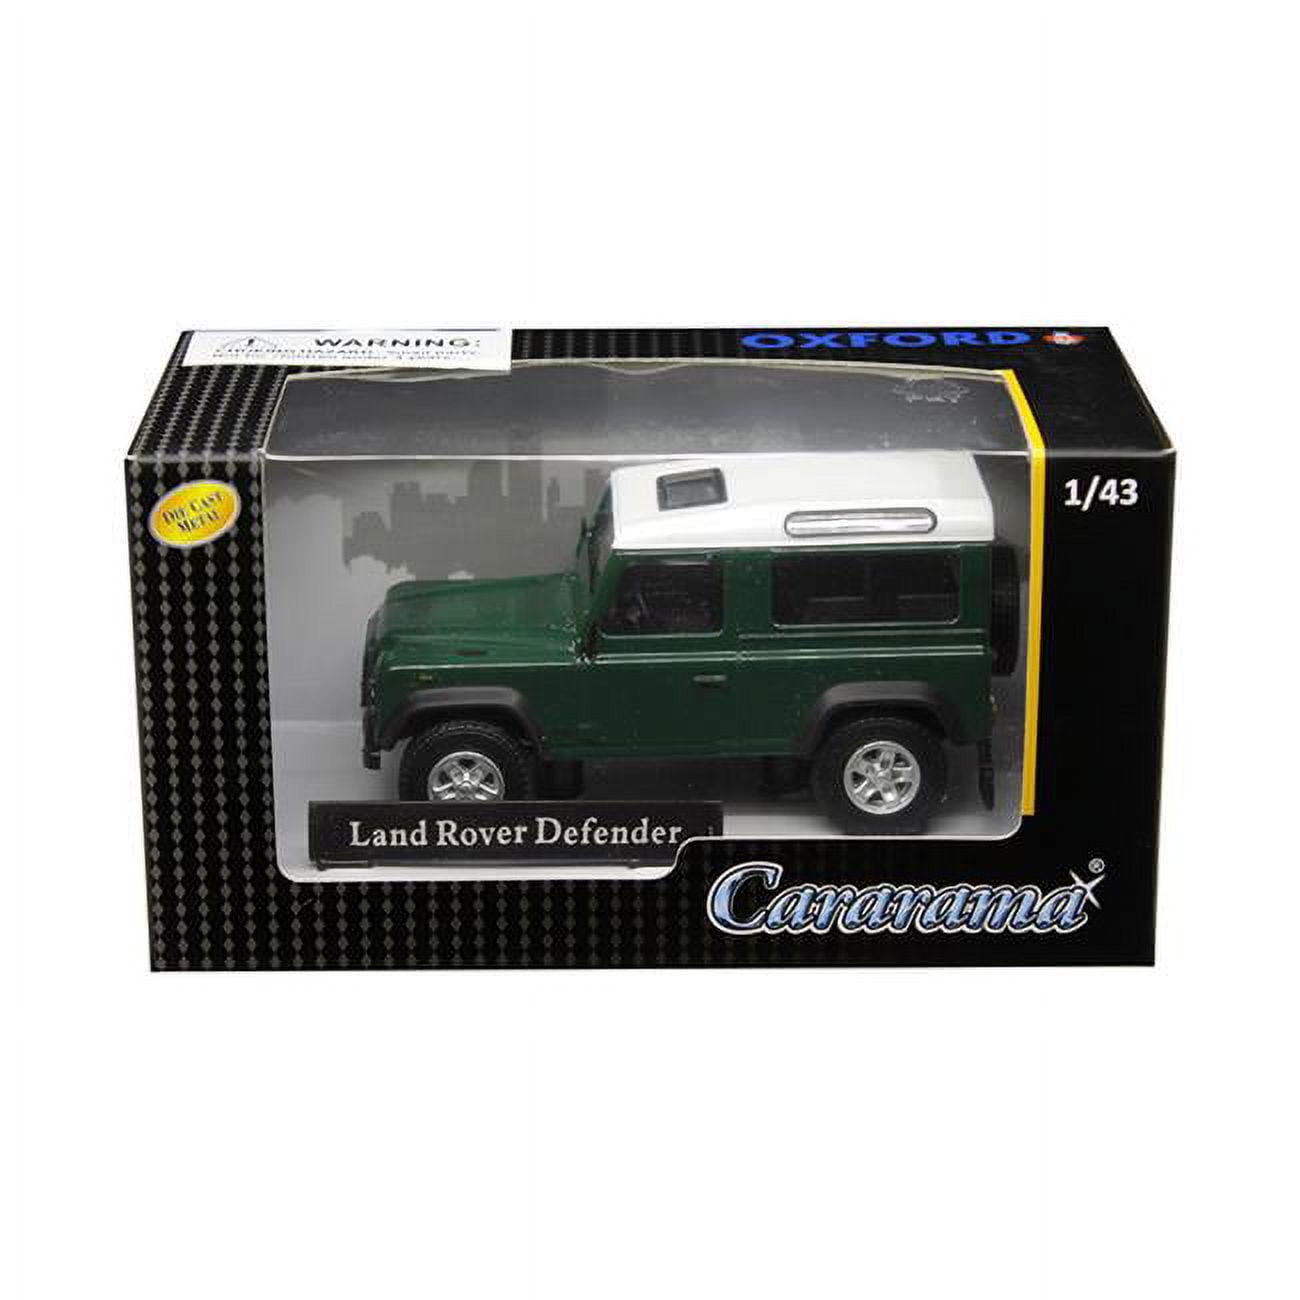 4-55260 1 Isto 43 Land Rover Defender Diecast Model Car, Dark Green